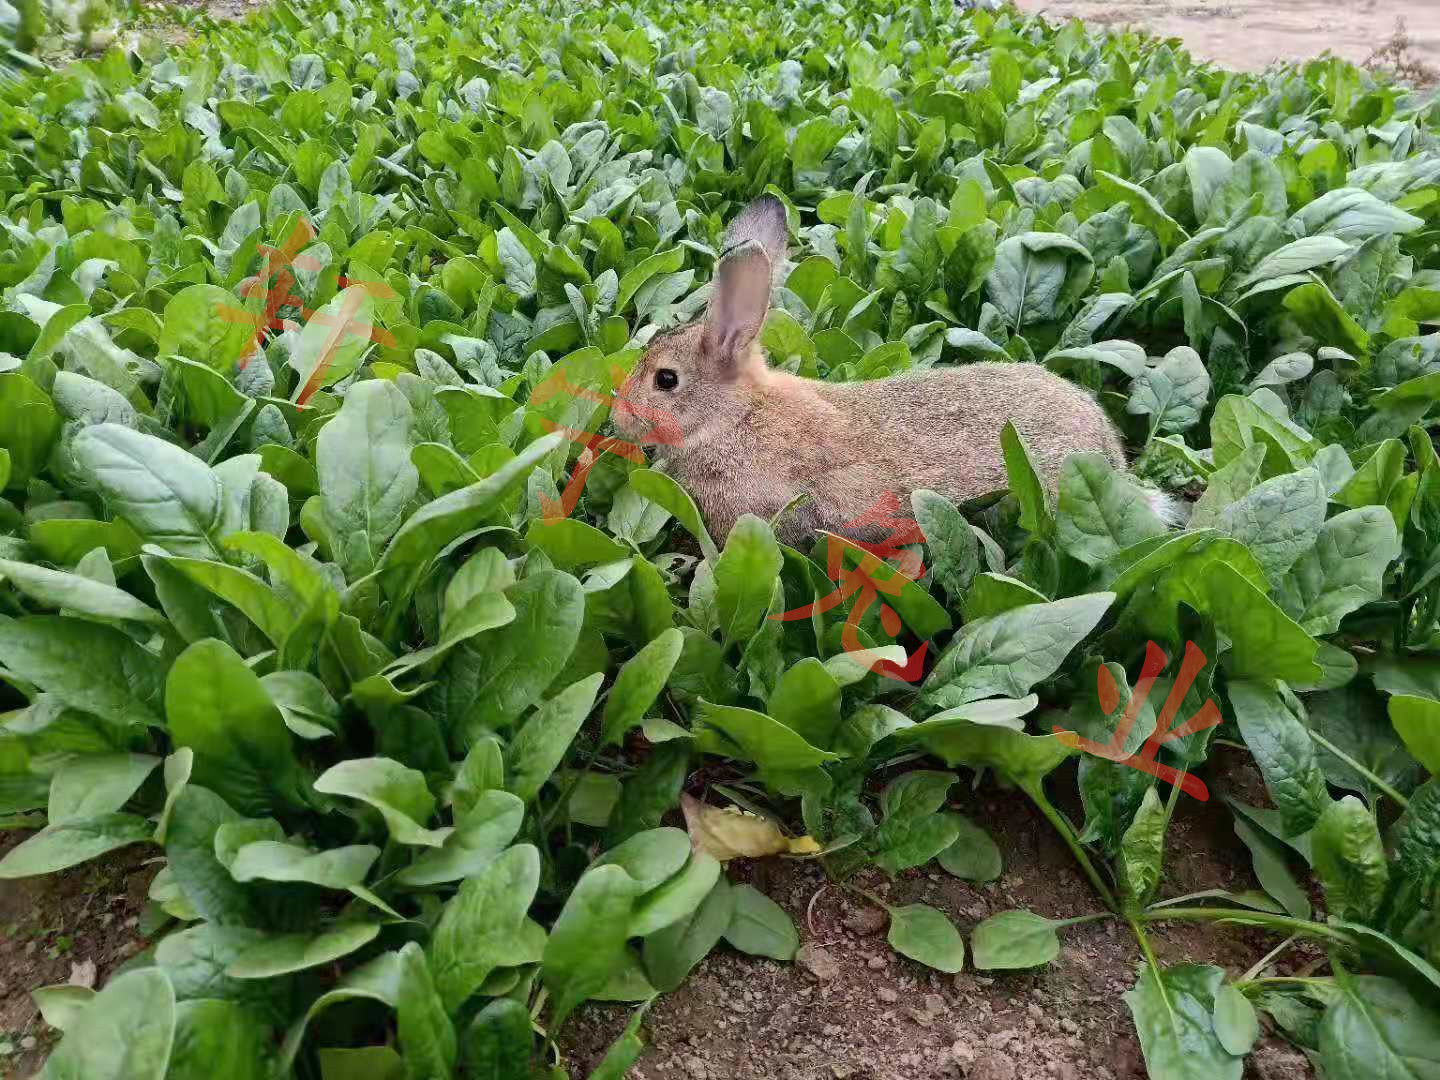 种兔獭兔肉兔养殖免费技术支持 烤兔子技术教授【山东轩宁珍禽养殖有限公司】